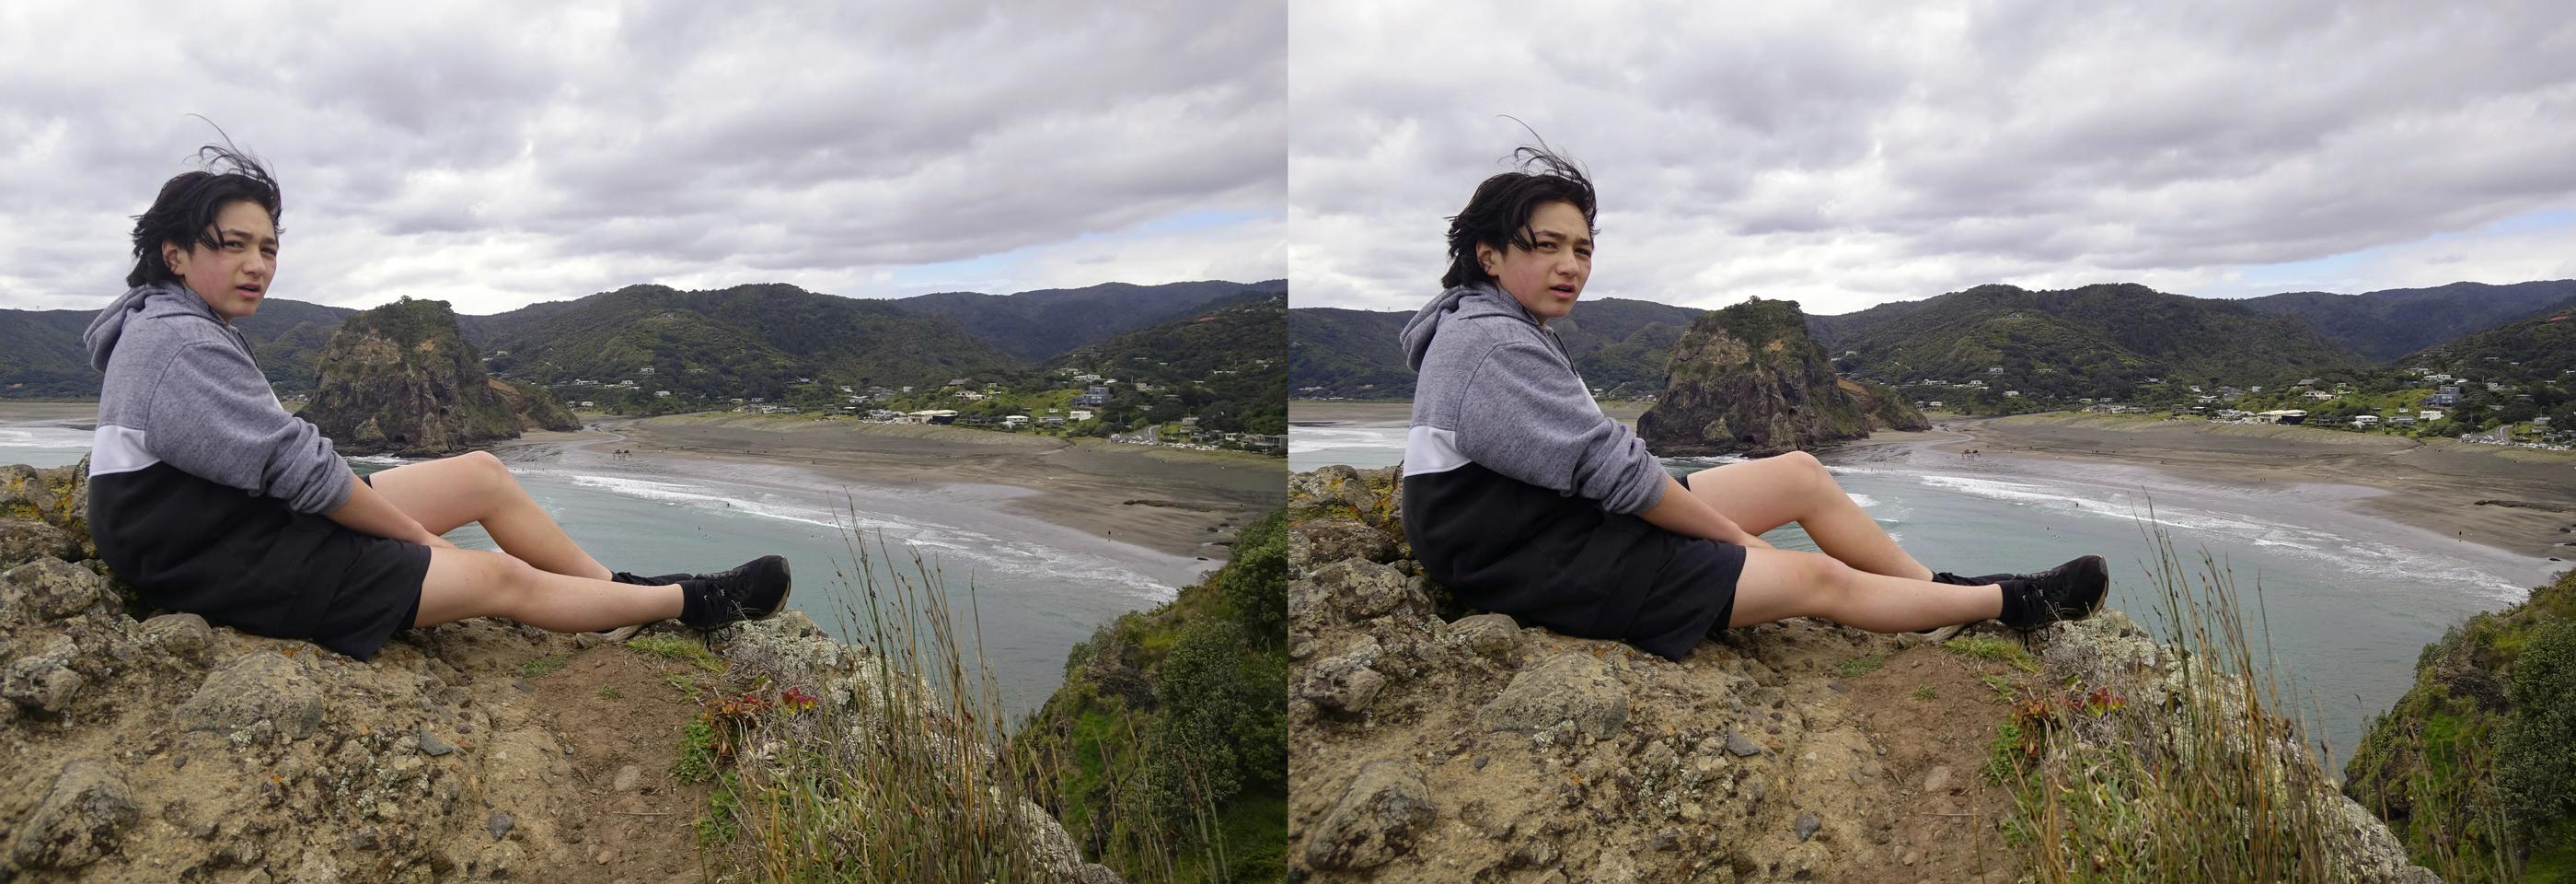 Kaito at Piha beach - Auckland New Zealand. (5 of 5)